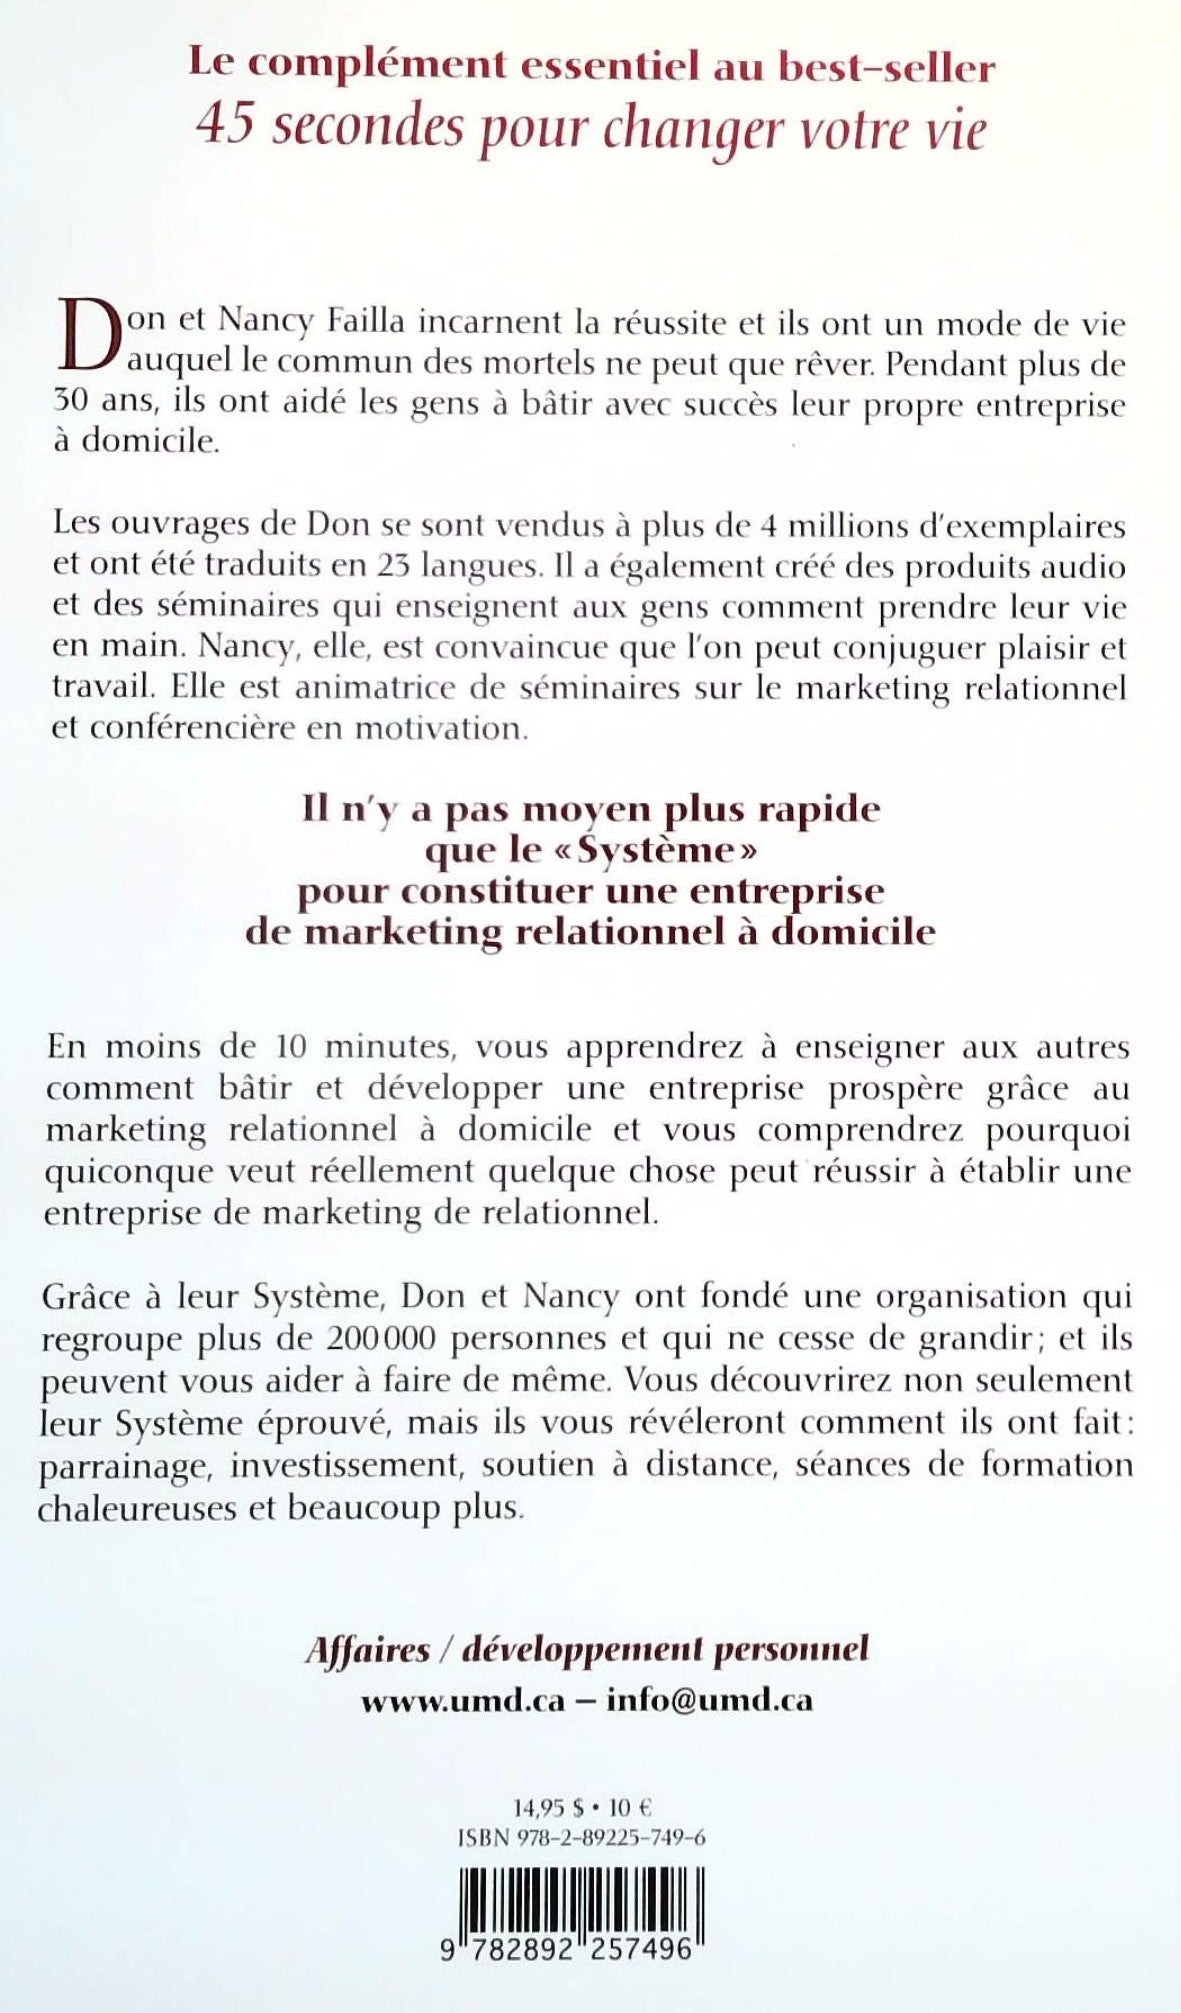 Le système : Trois étapes pour bâtir et développer uen entreprise prospèrre grâce au marketing relationnel (Don Failla)